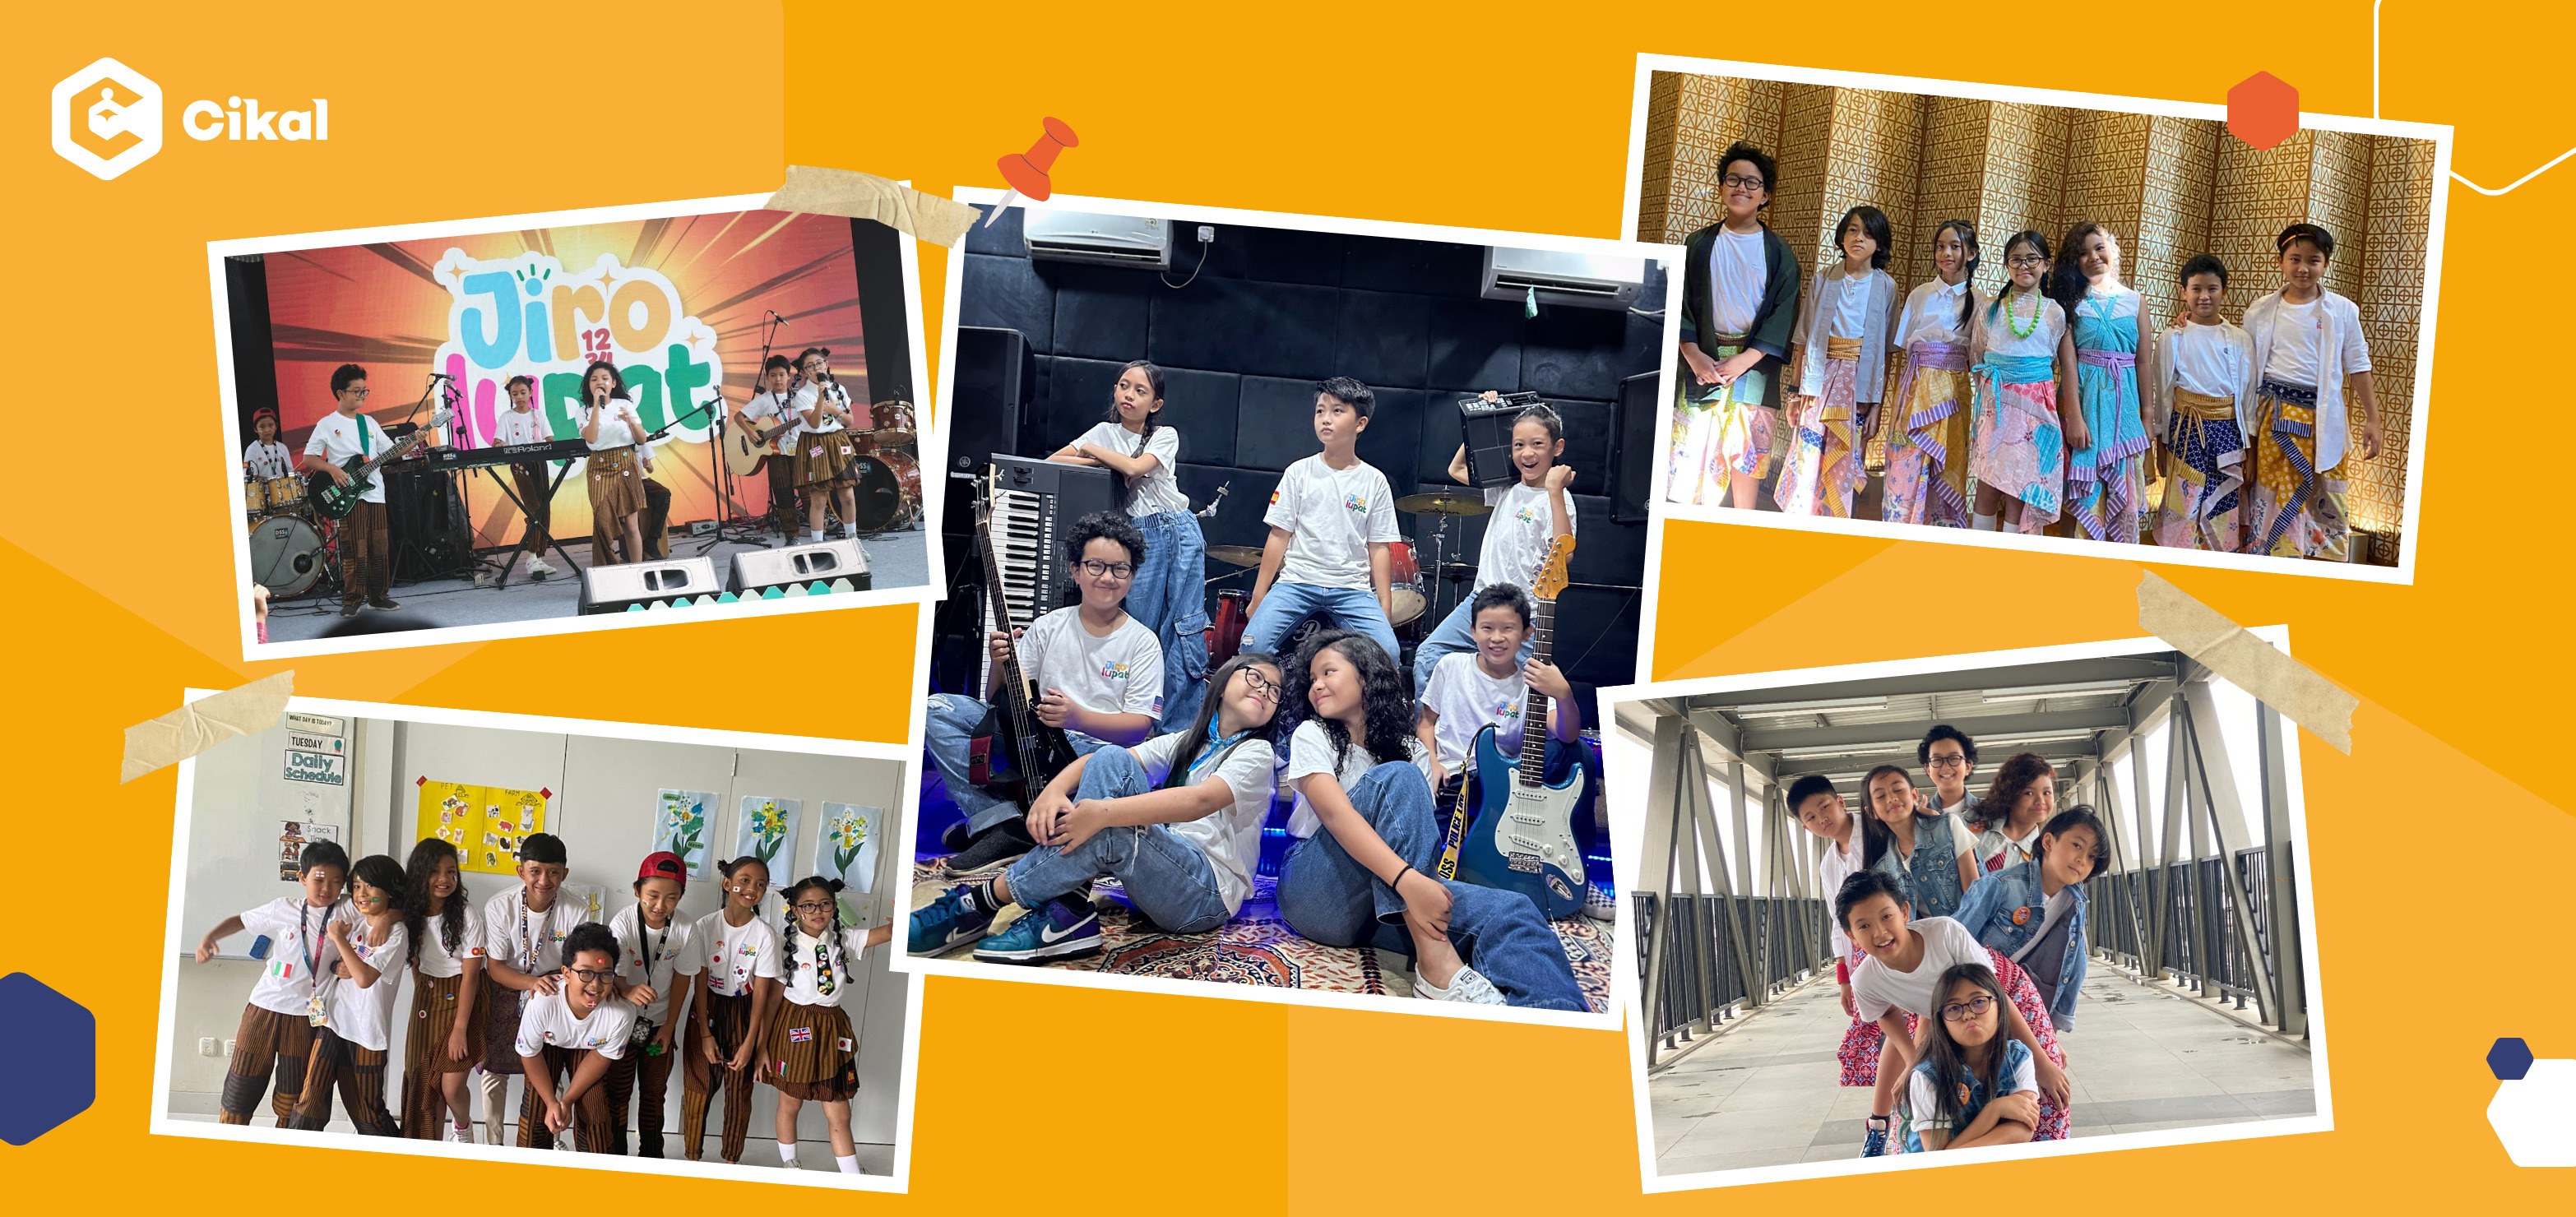 Berkenalan dengan Jirolupat, Band Anak SD Berbakat dari Sekolah Cikal Lebak Bulus! 